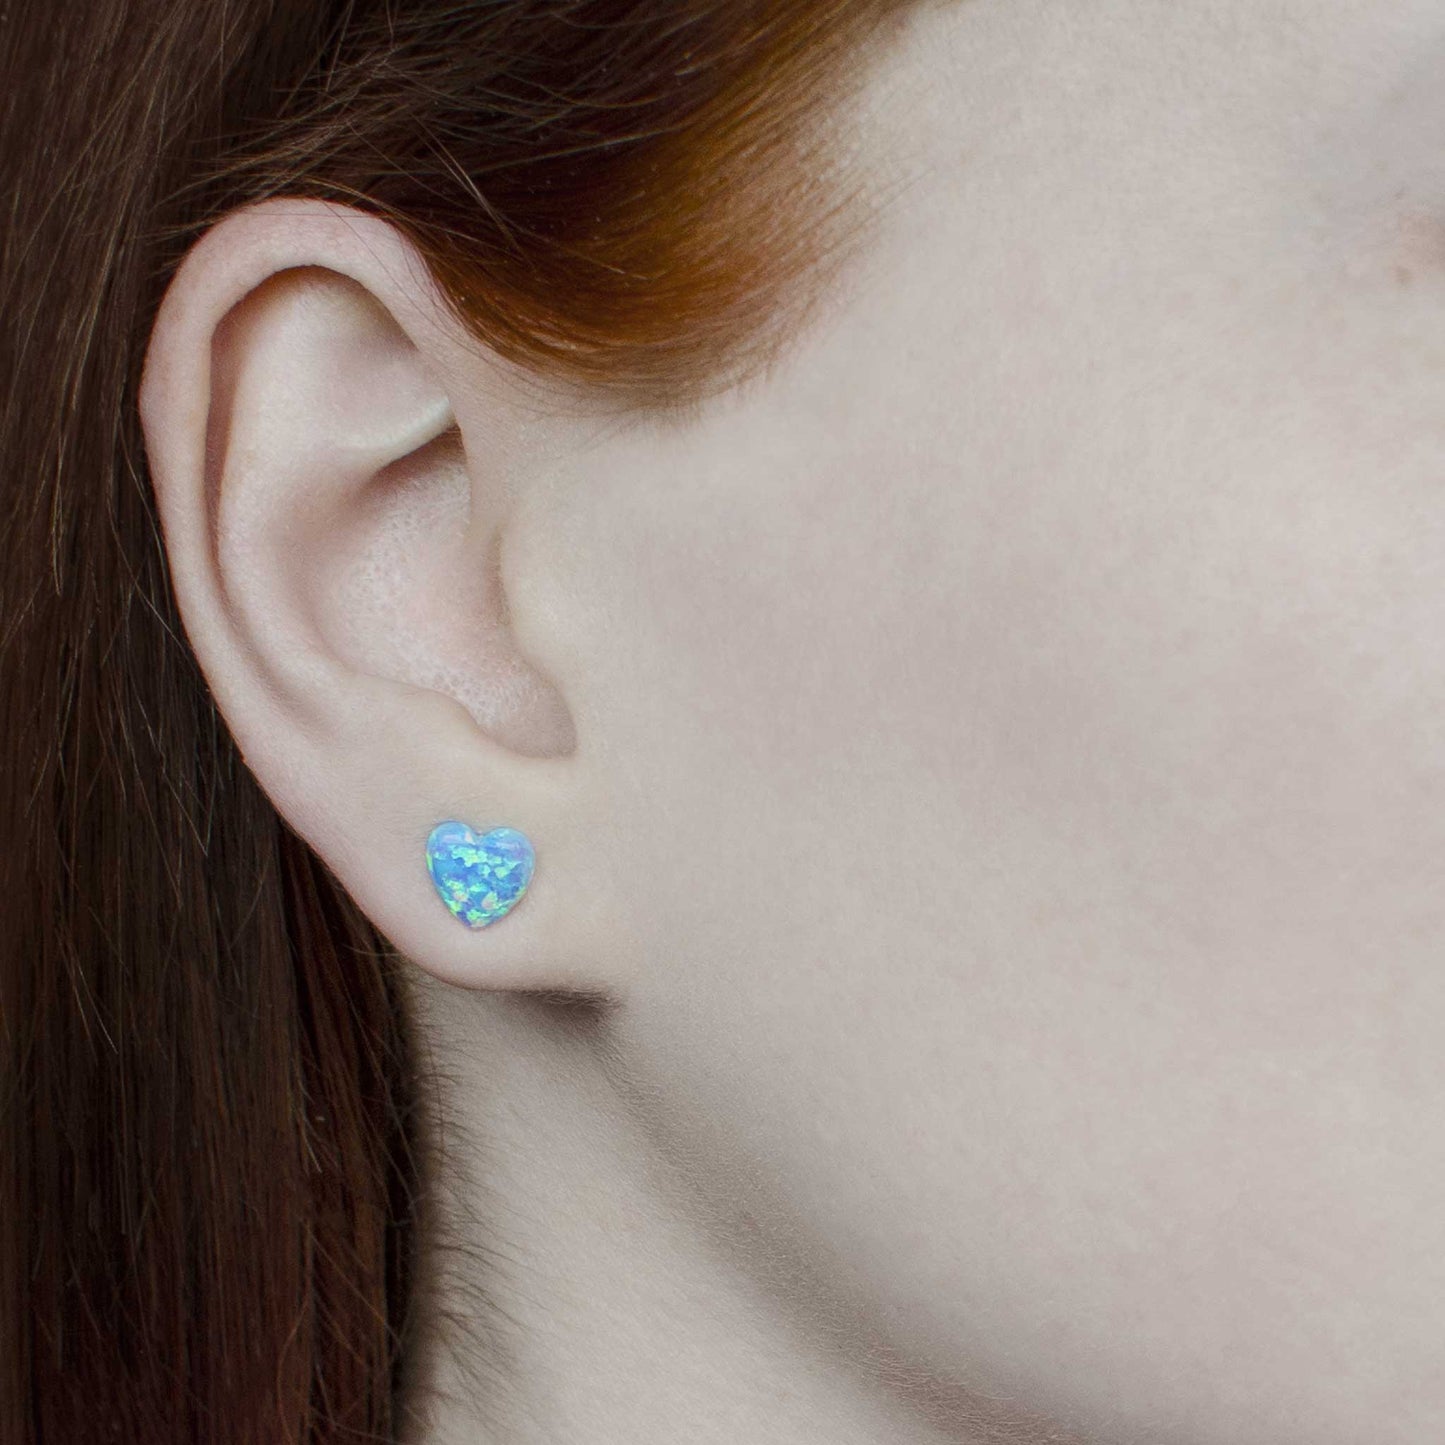 Woman wearing light blue Opal heart earring in earlobe